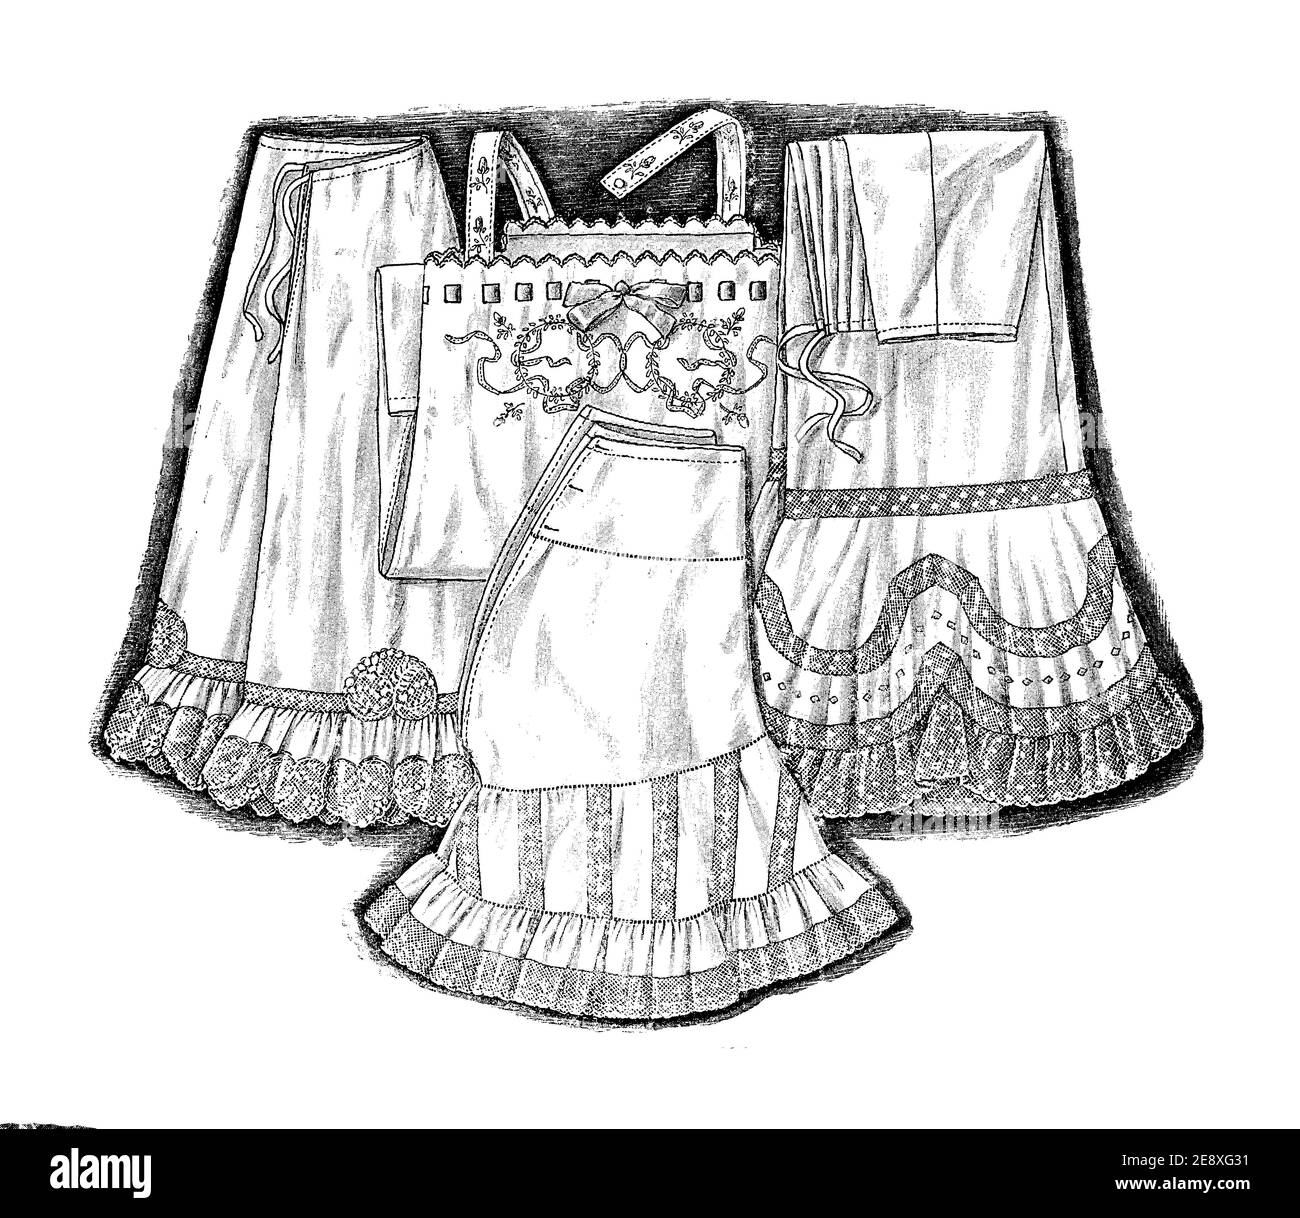 Moda de las mujeres 1908, lencería reforma:chemise, petticoat, vestir racional más cómodo y adecuado para un estilo de vida moderno con una silueta más suave Foto de stock